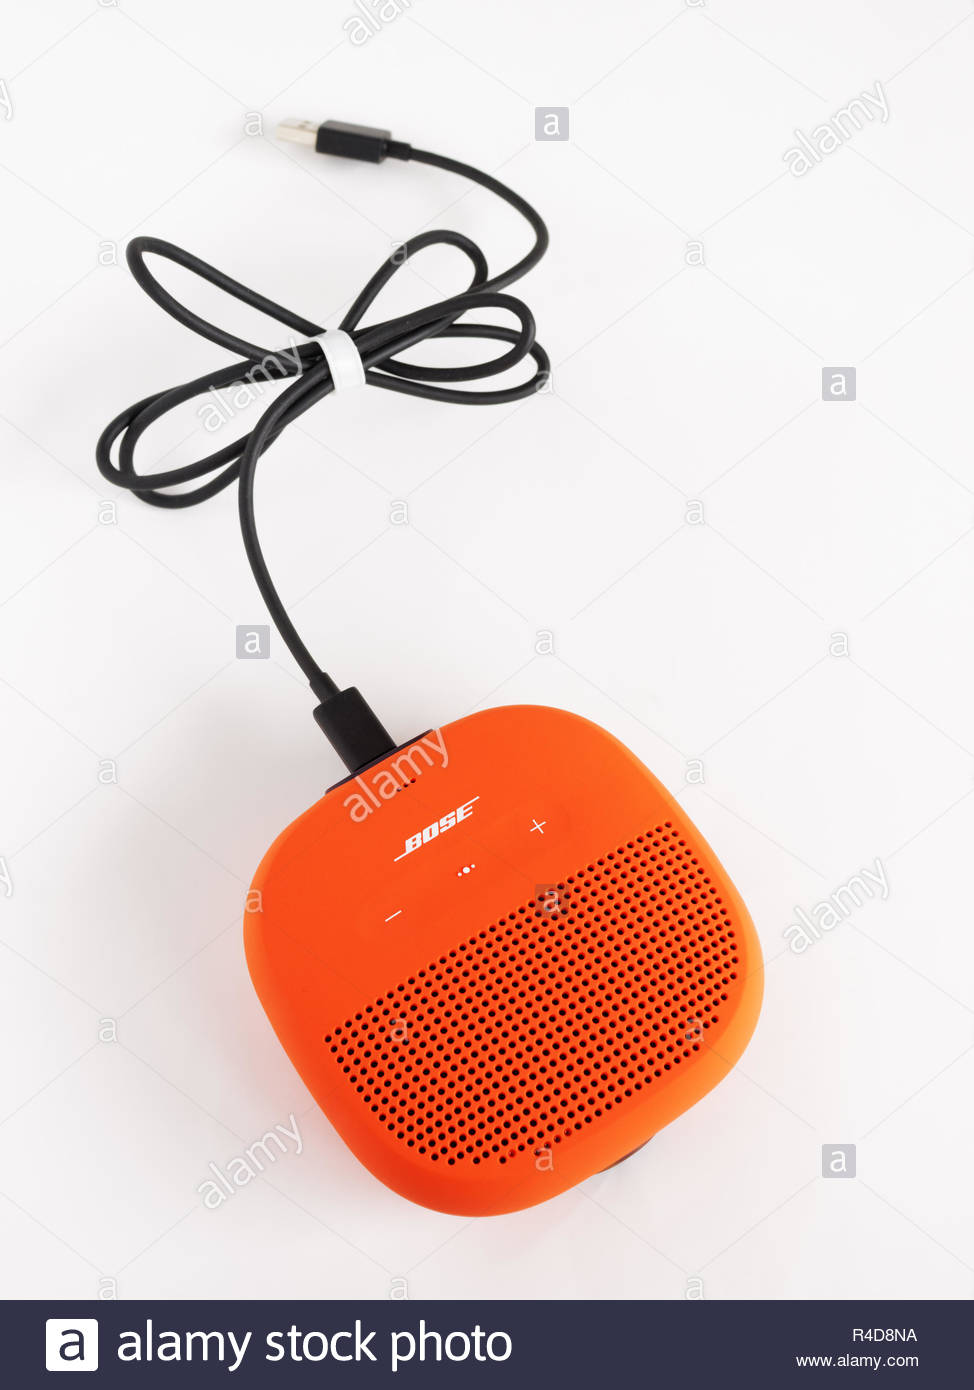 bose soundlink micro charging